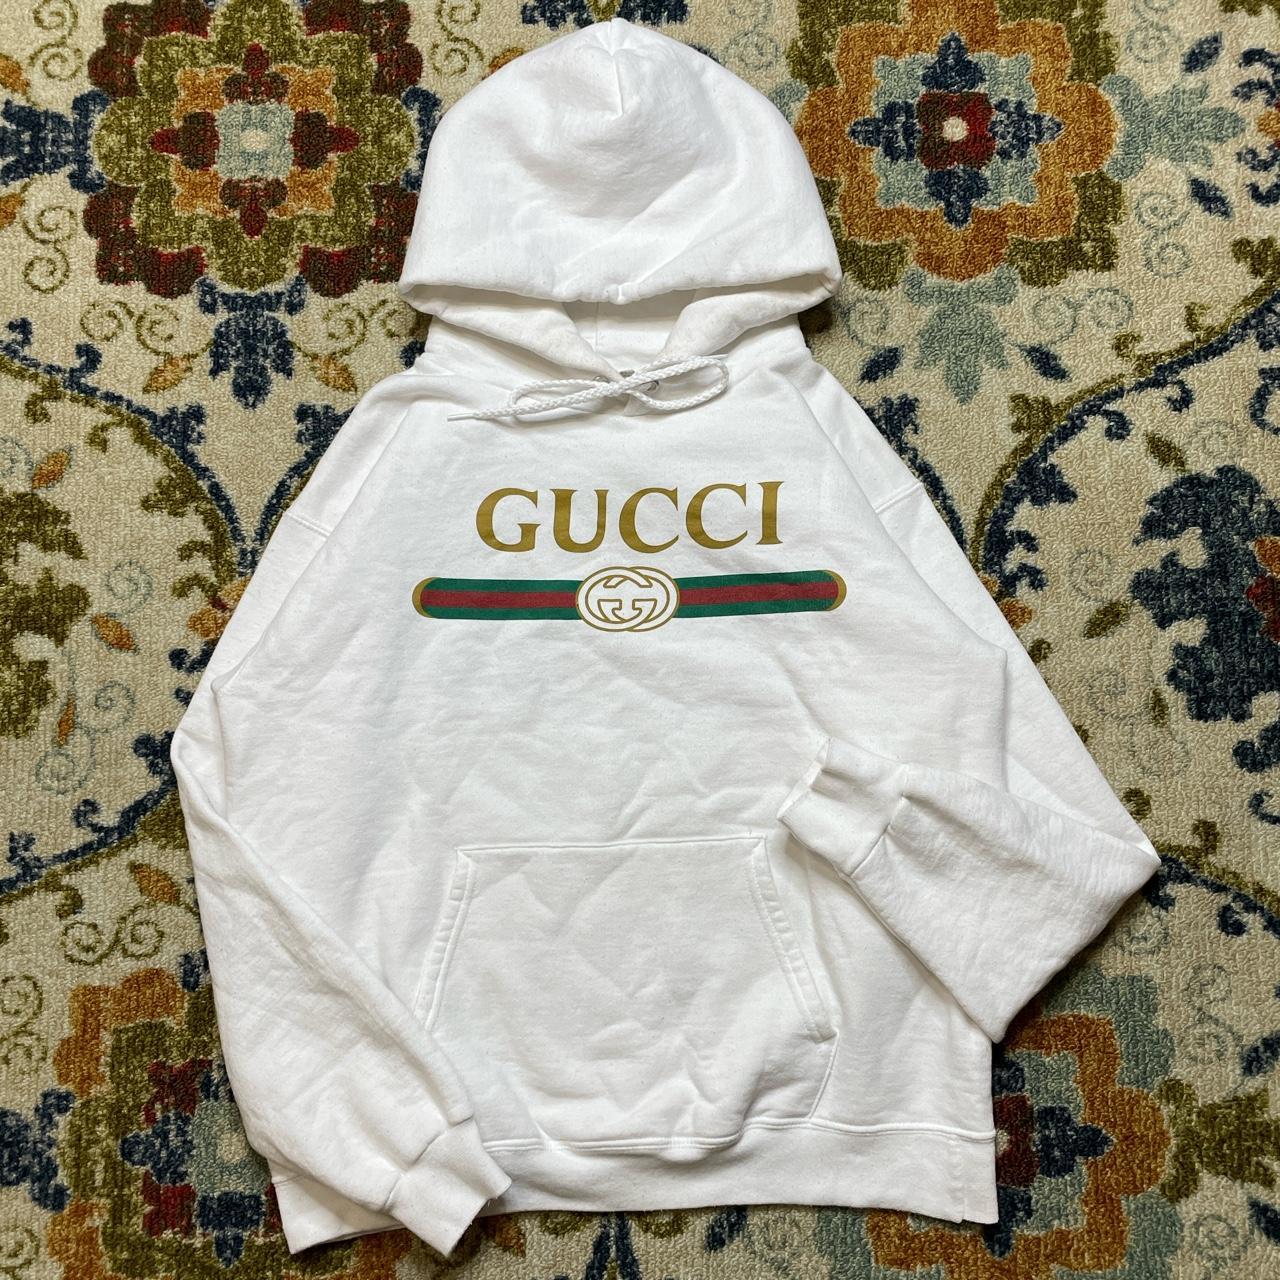 Vintage Gucci white pullover hoodie jacket S... - Depop